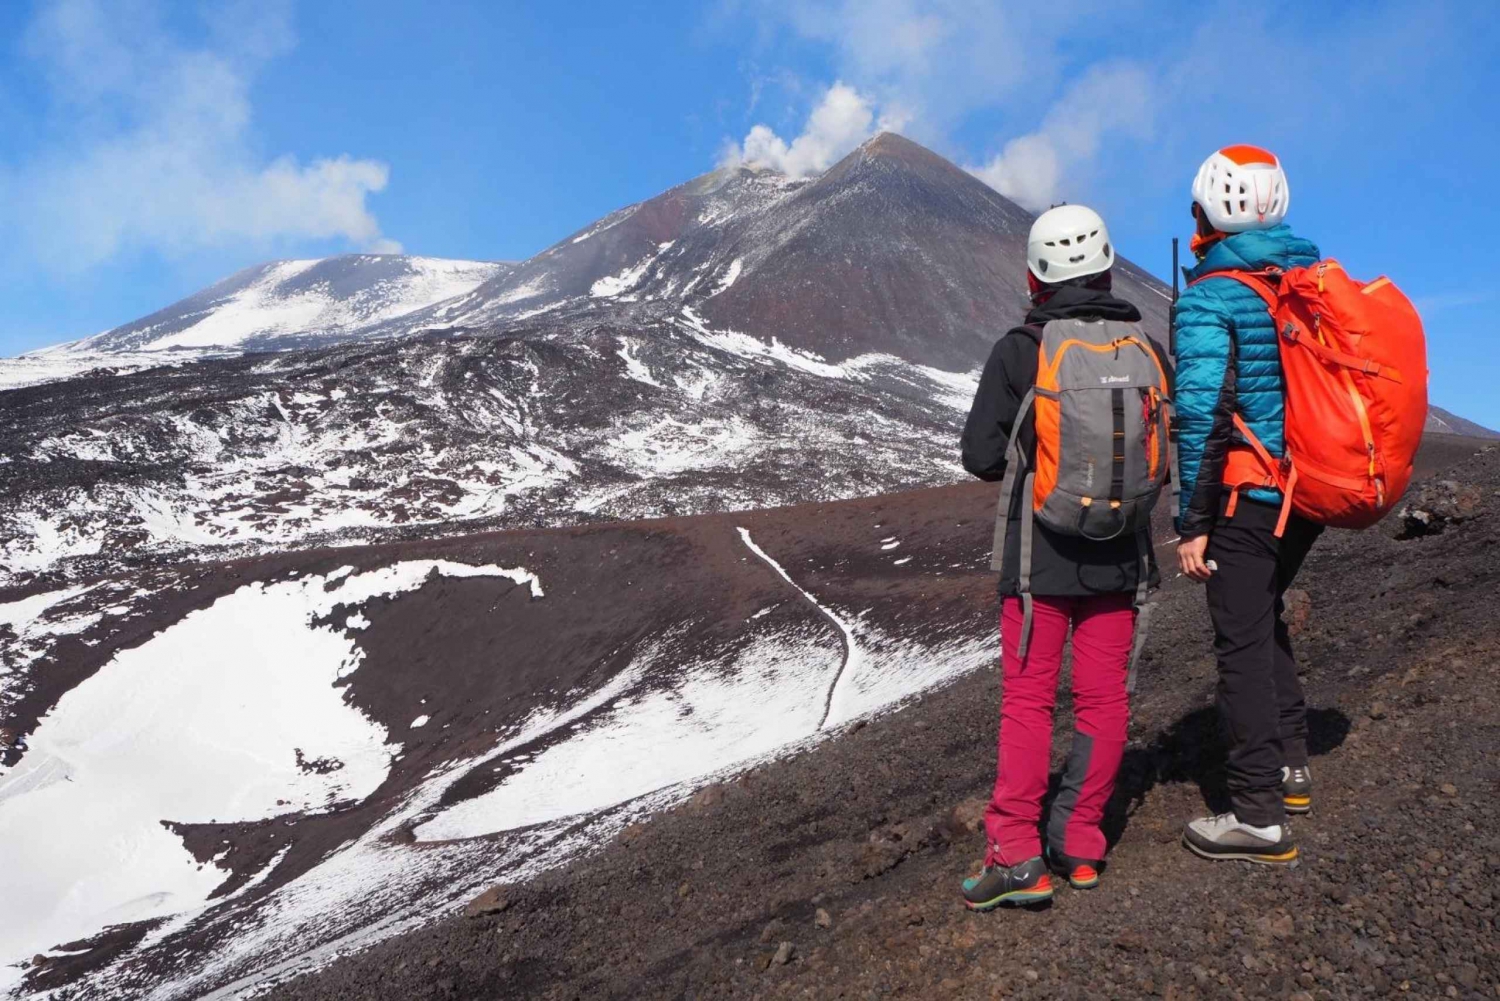 Crateras do Etna: Trekking em alta altitude